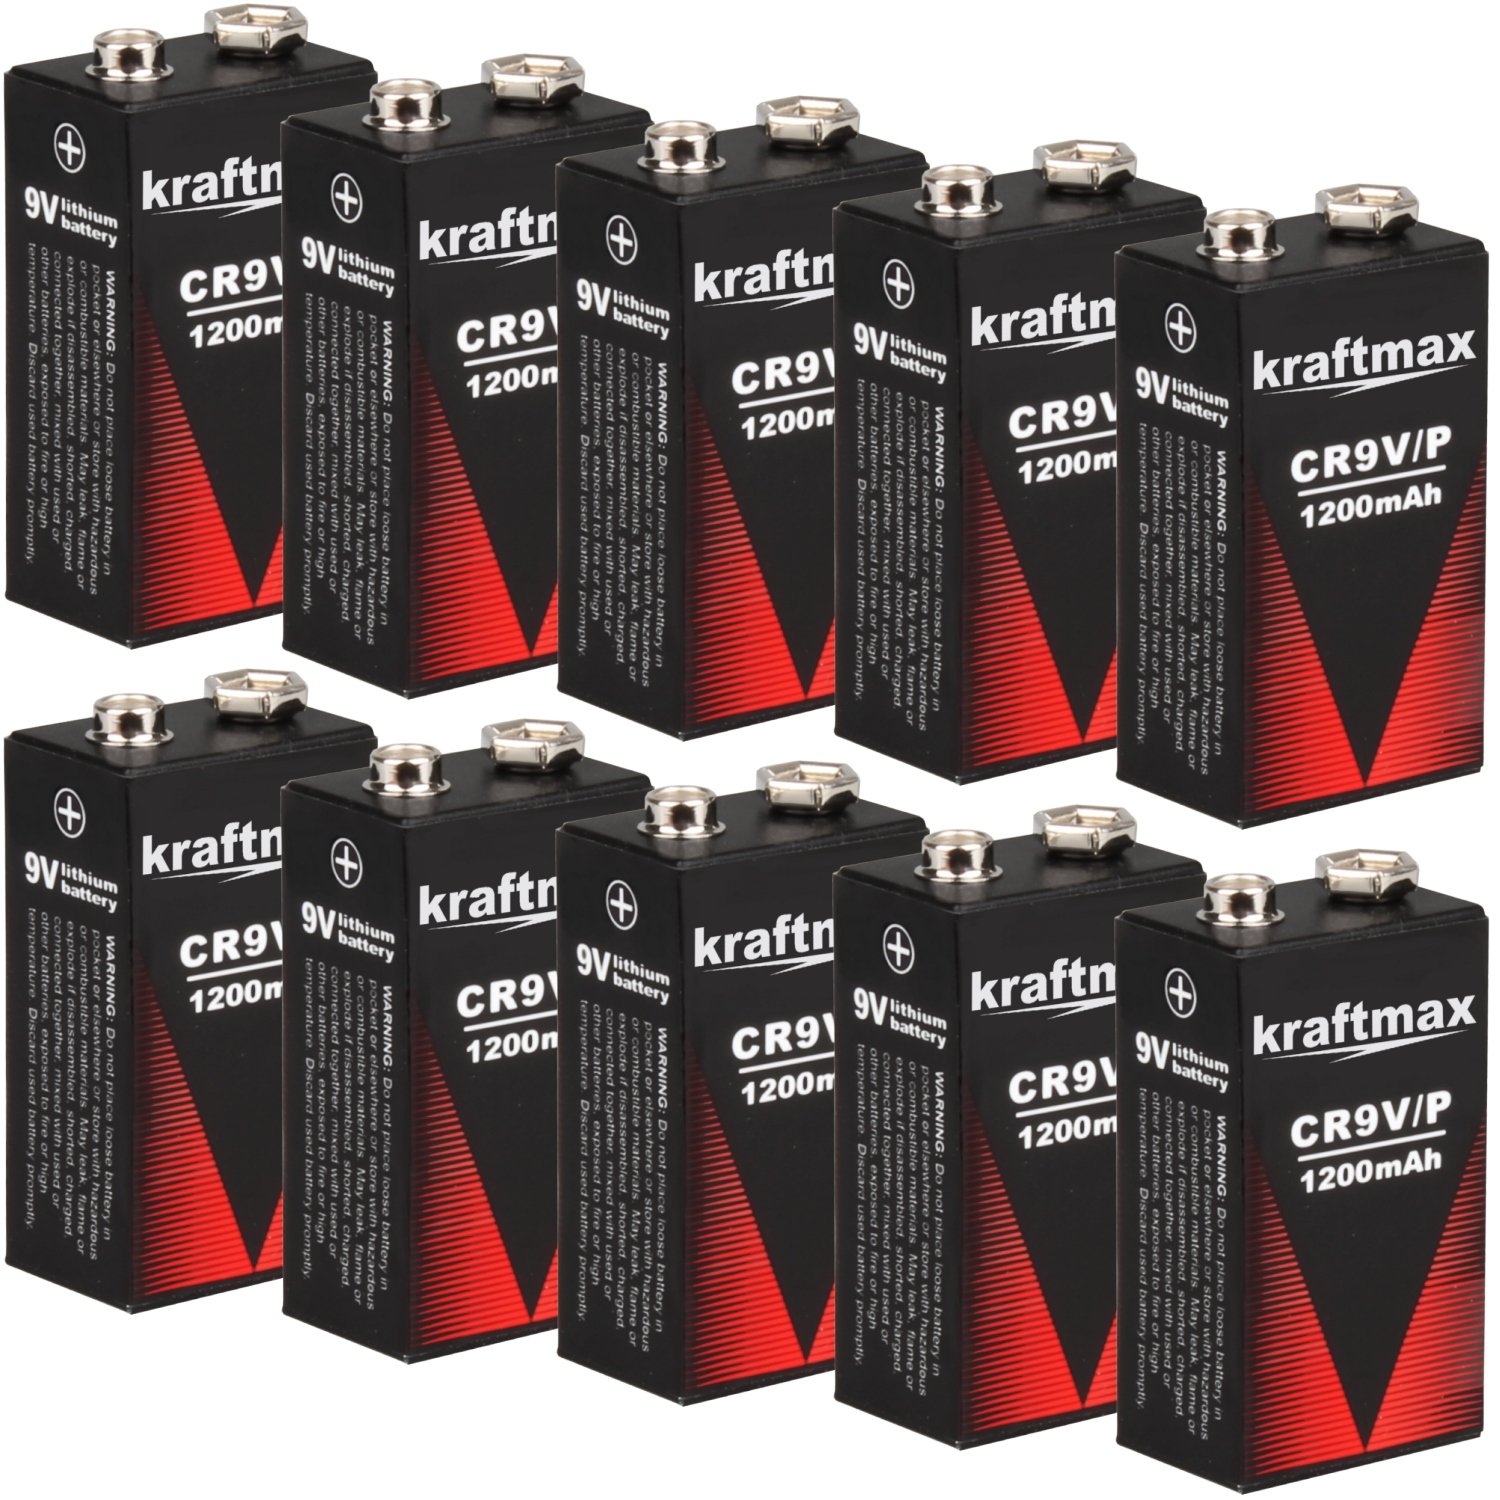 kraftmax 10x 9V Block Lithium Hochleistungs- Longlife Batterien für Rauchmelder/Feuermelder - 10 Jahre Batterie Lebensdauer